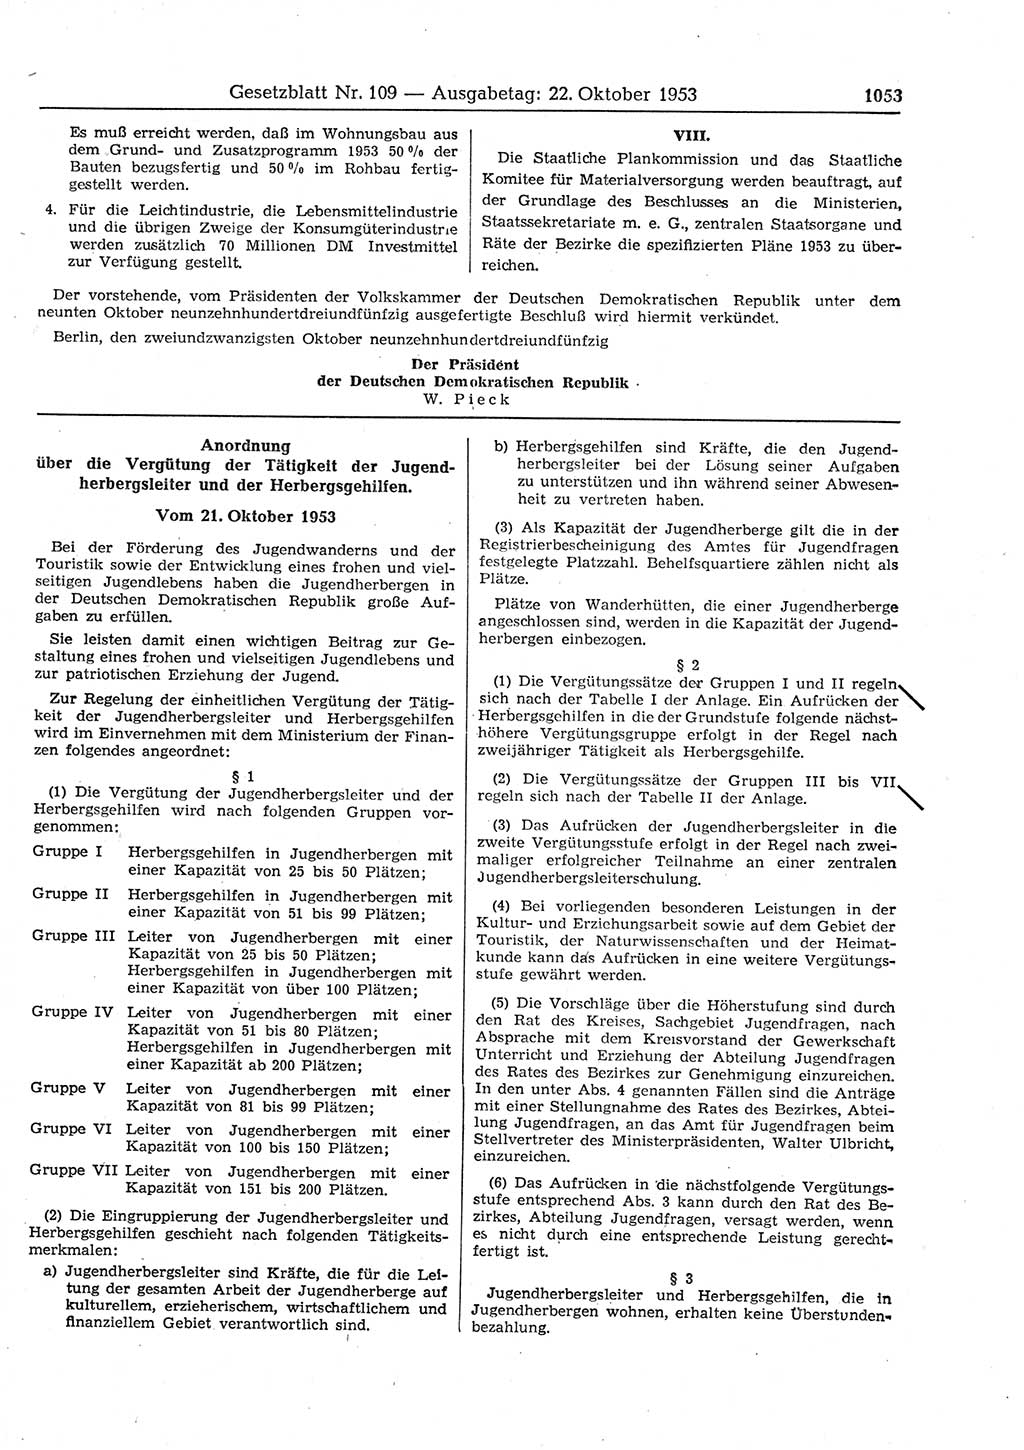 Gesetzblatt (GBl.) der Deutschen Demokratischen Republik (DDR) 1953, Seite 1053 (GBl. DDR 1953, S. 1053)